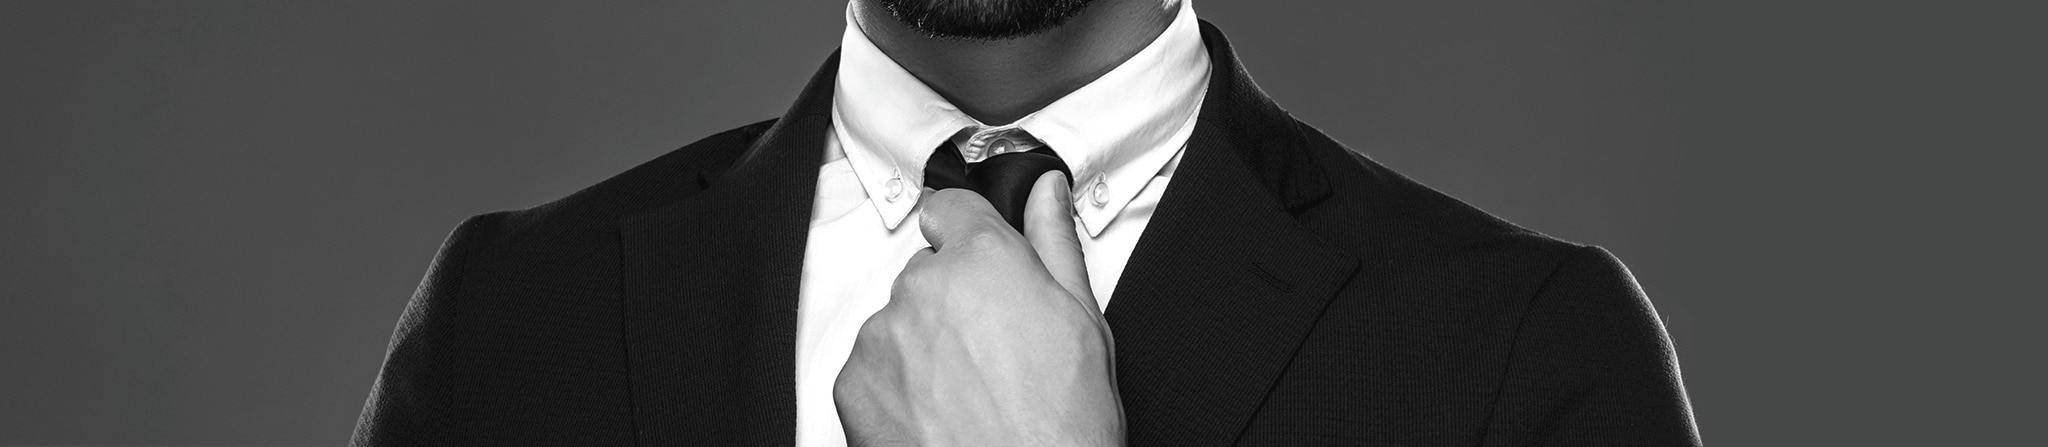 Primer plano del saco de un traje, camisa y corbata de un hombre